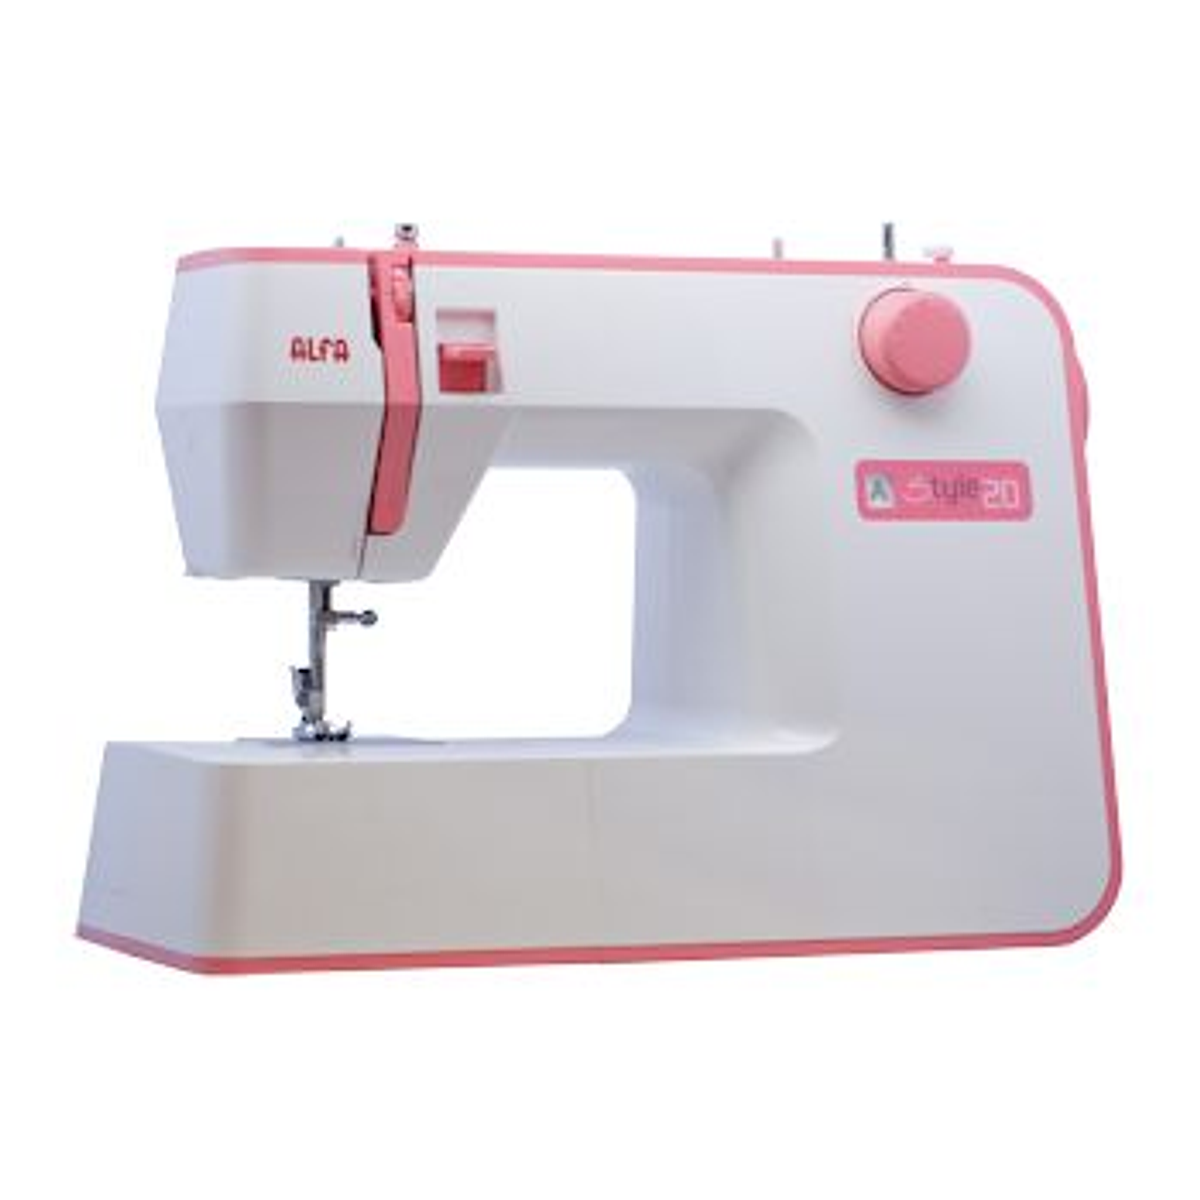 Maquinas de coser Alfa mod Style 20